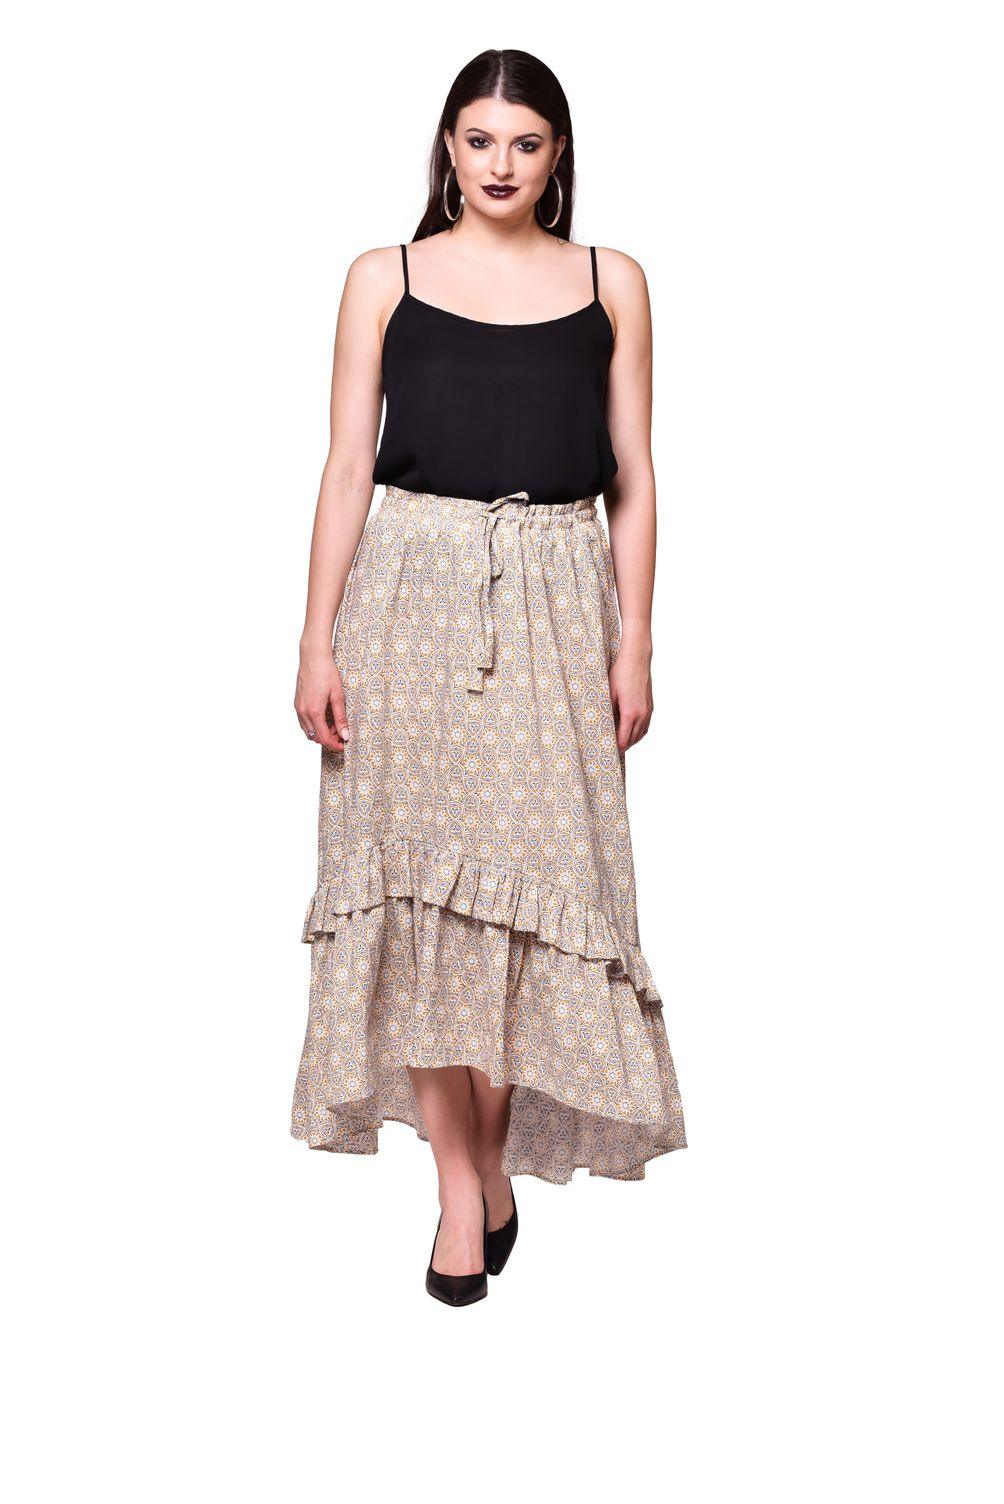 Qurvii Mustard frill cotton skirt - Qurvii India